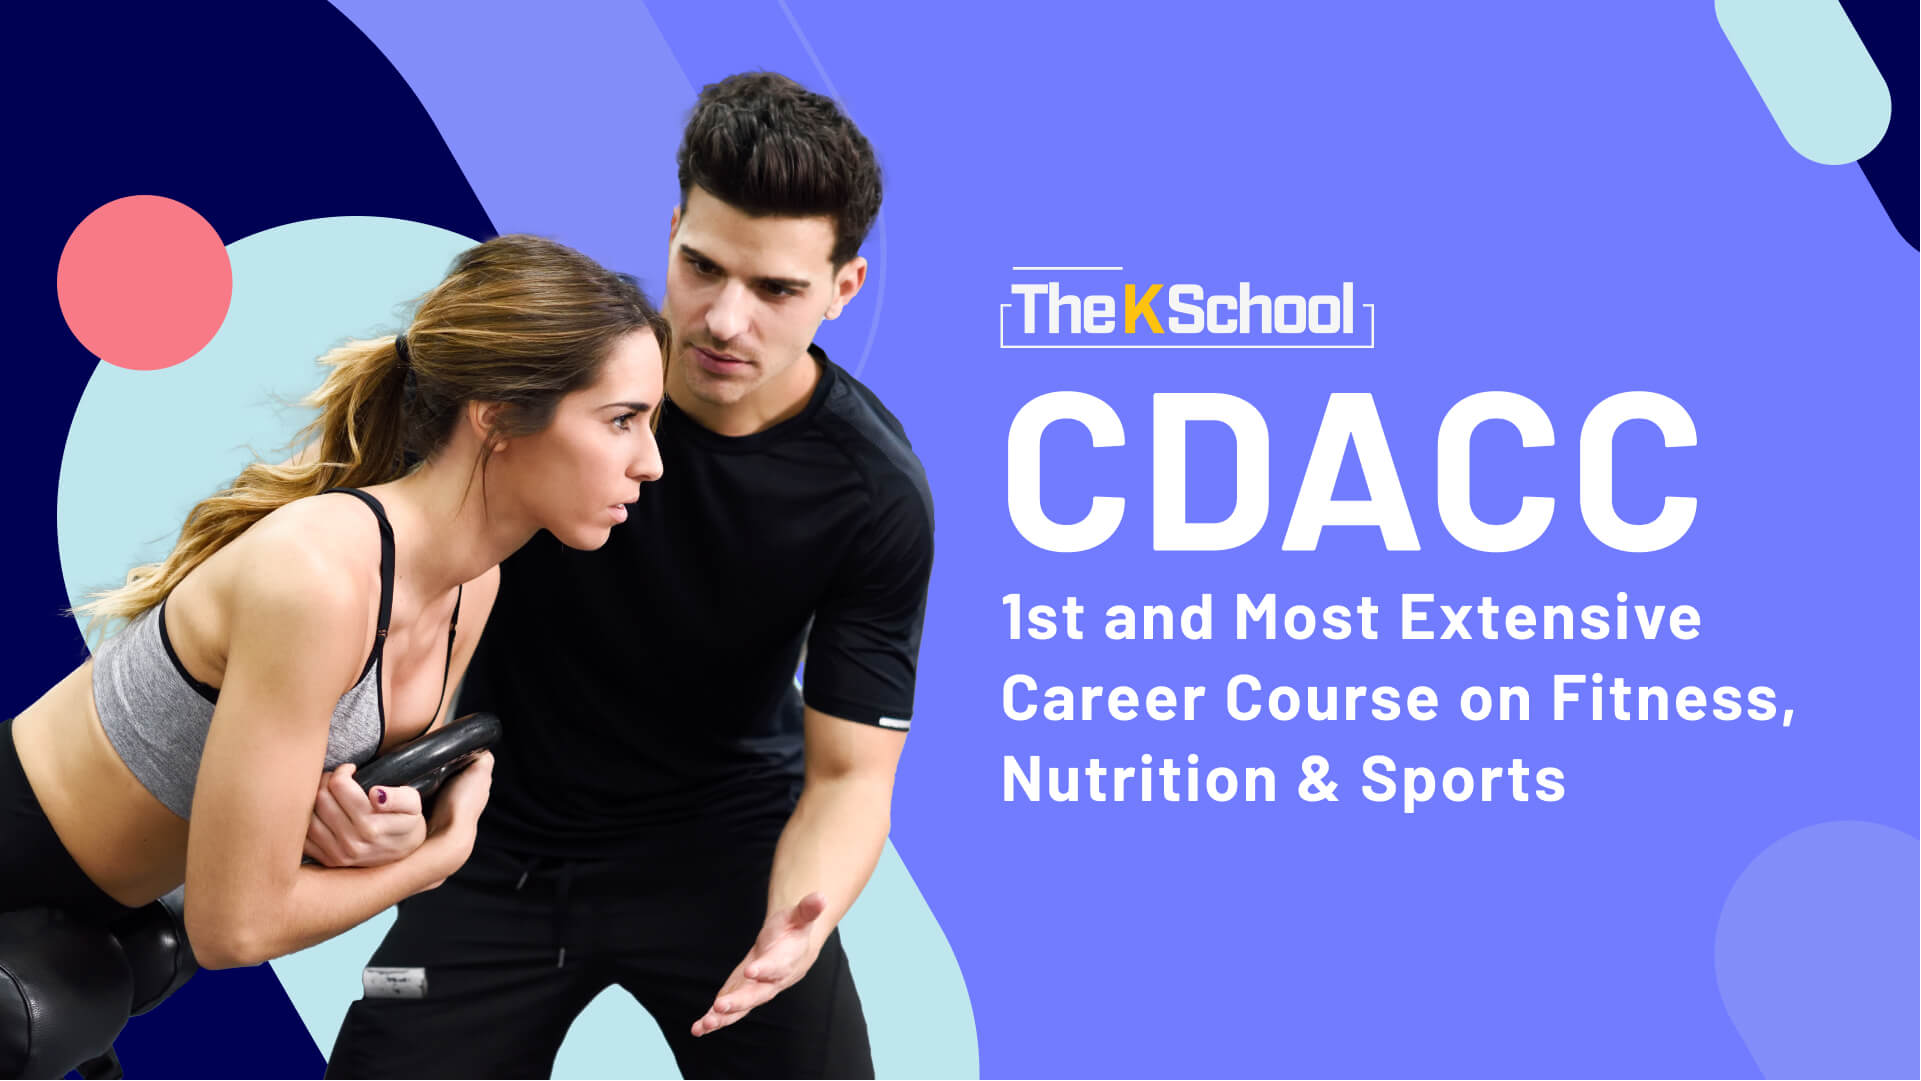 CDACC – Coaches & Dietitians Advance Career Course